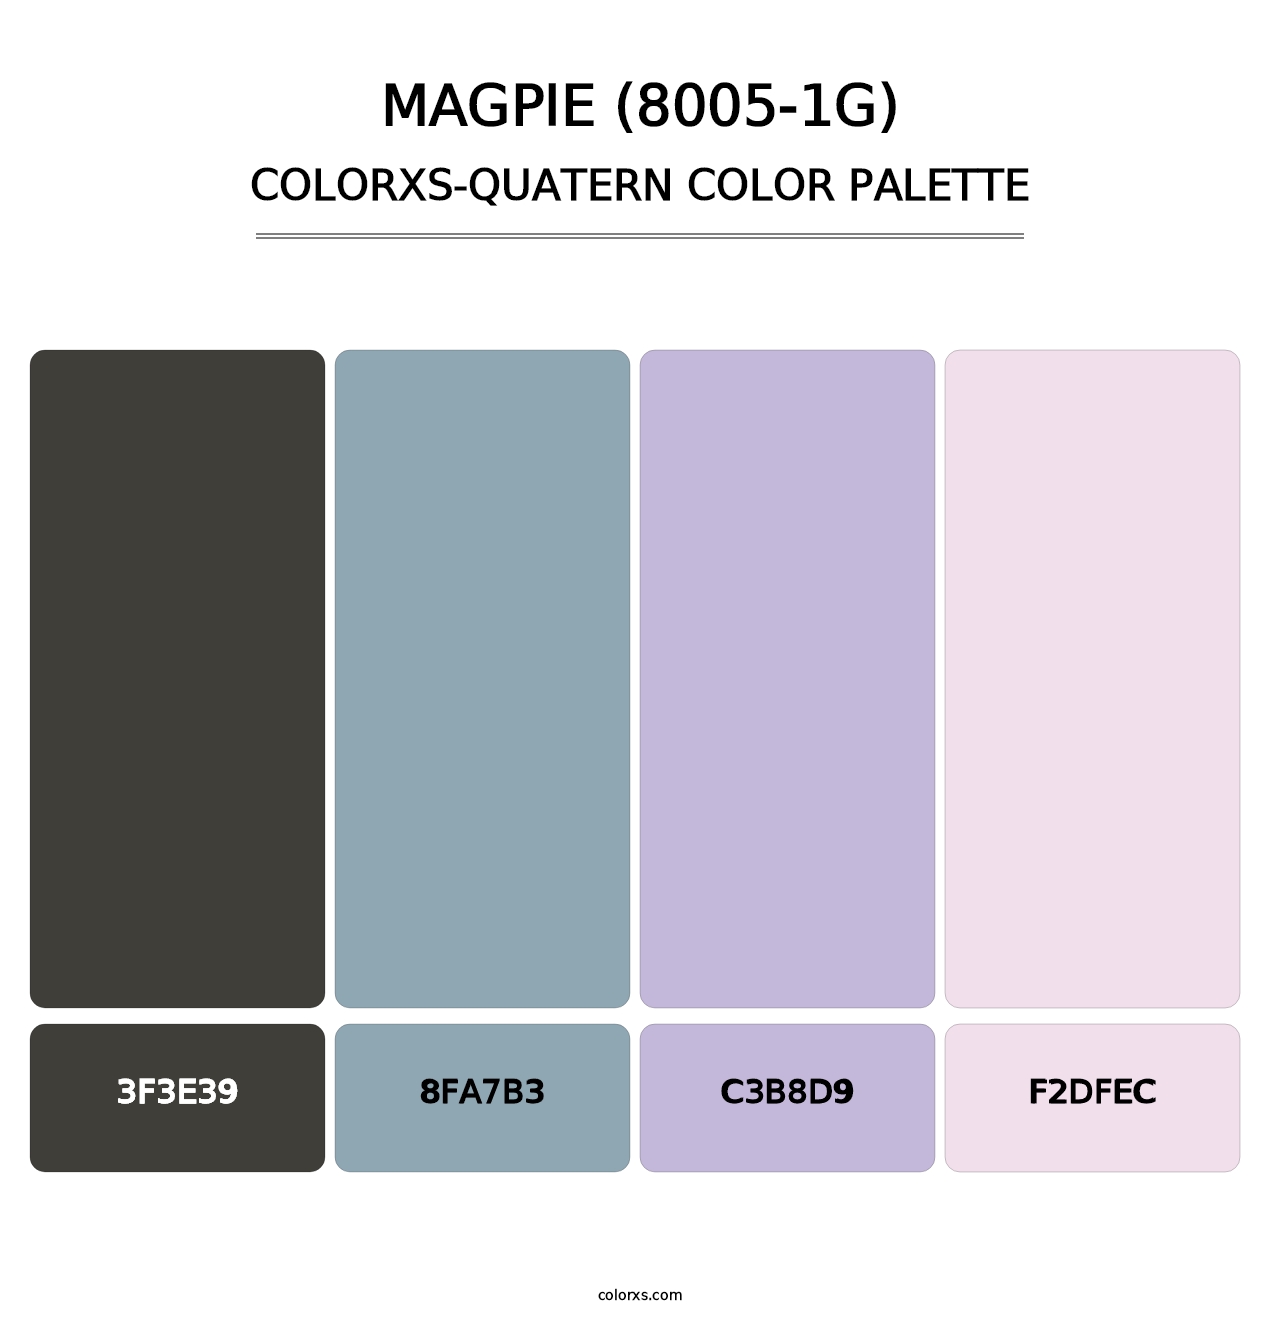 Magpie (8005-1G) - Colorxs Quatern Palette